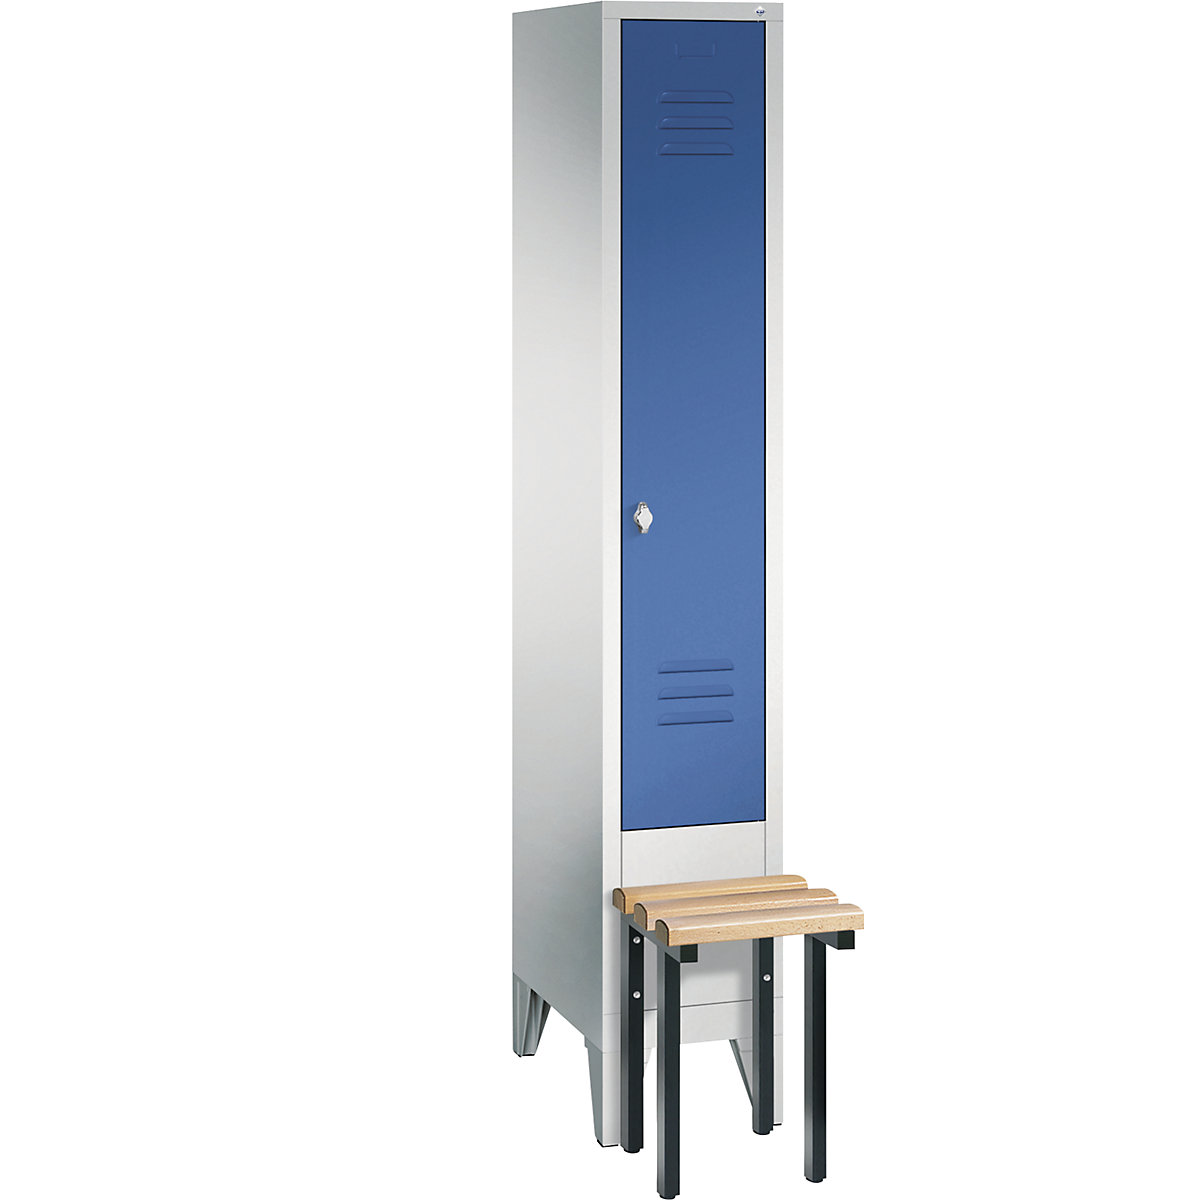 Garderobna omara CLASSIC s klopjo – C+P, 1 predelek, širina 300 mm/predelek, svetlo sive / encijan modre barve-4